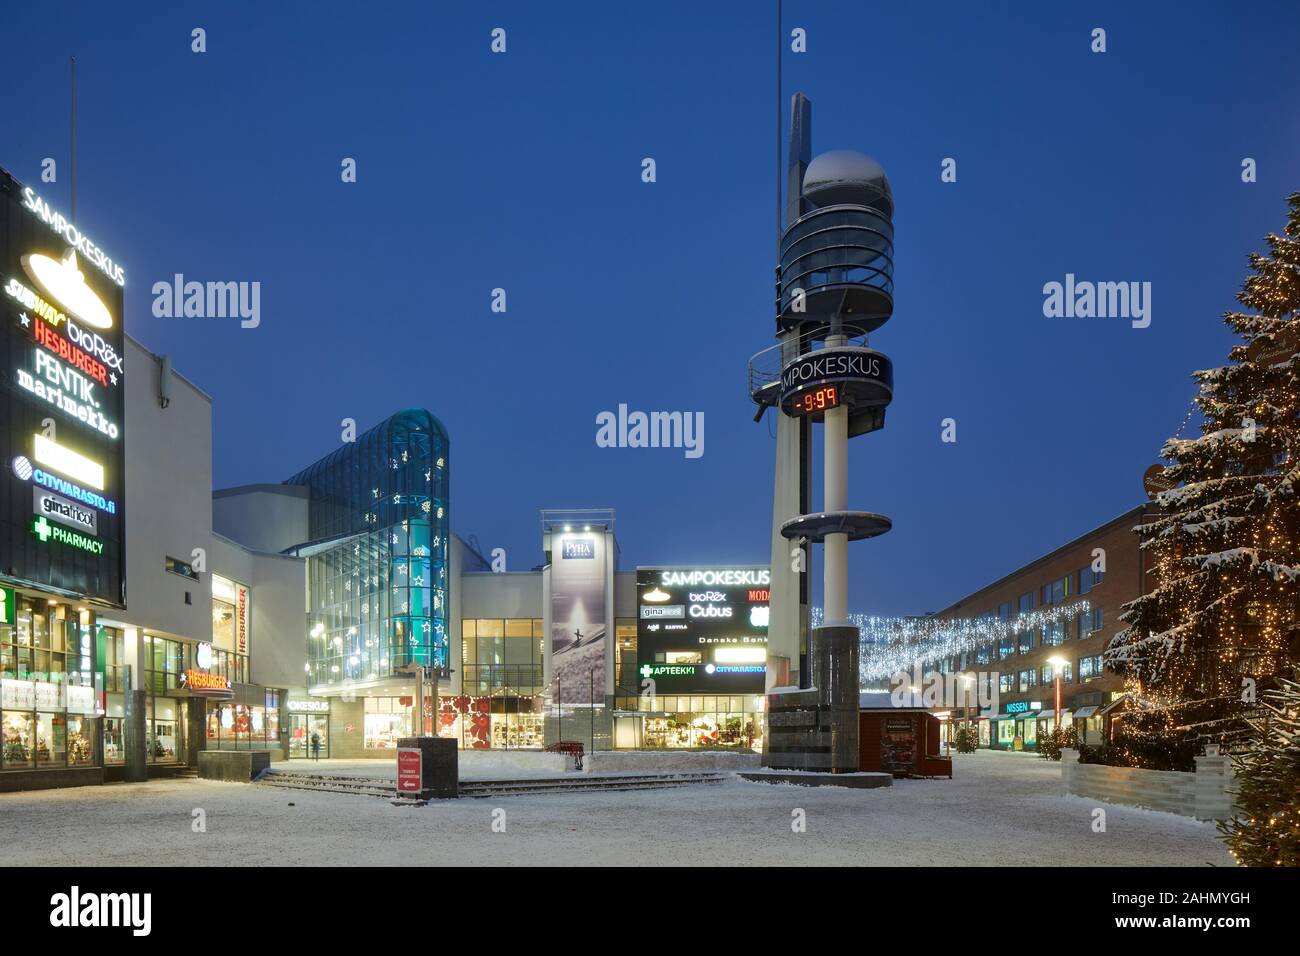 Finnische Rovaniemi eine Stadt in Finnland und der Region Lappland Sampokeskus Shopping Mall Stockfoto